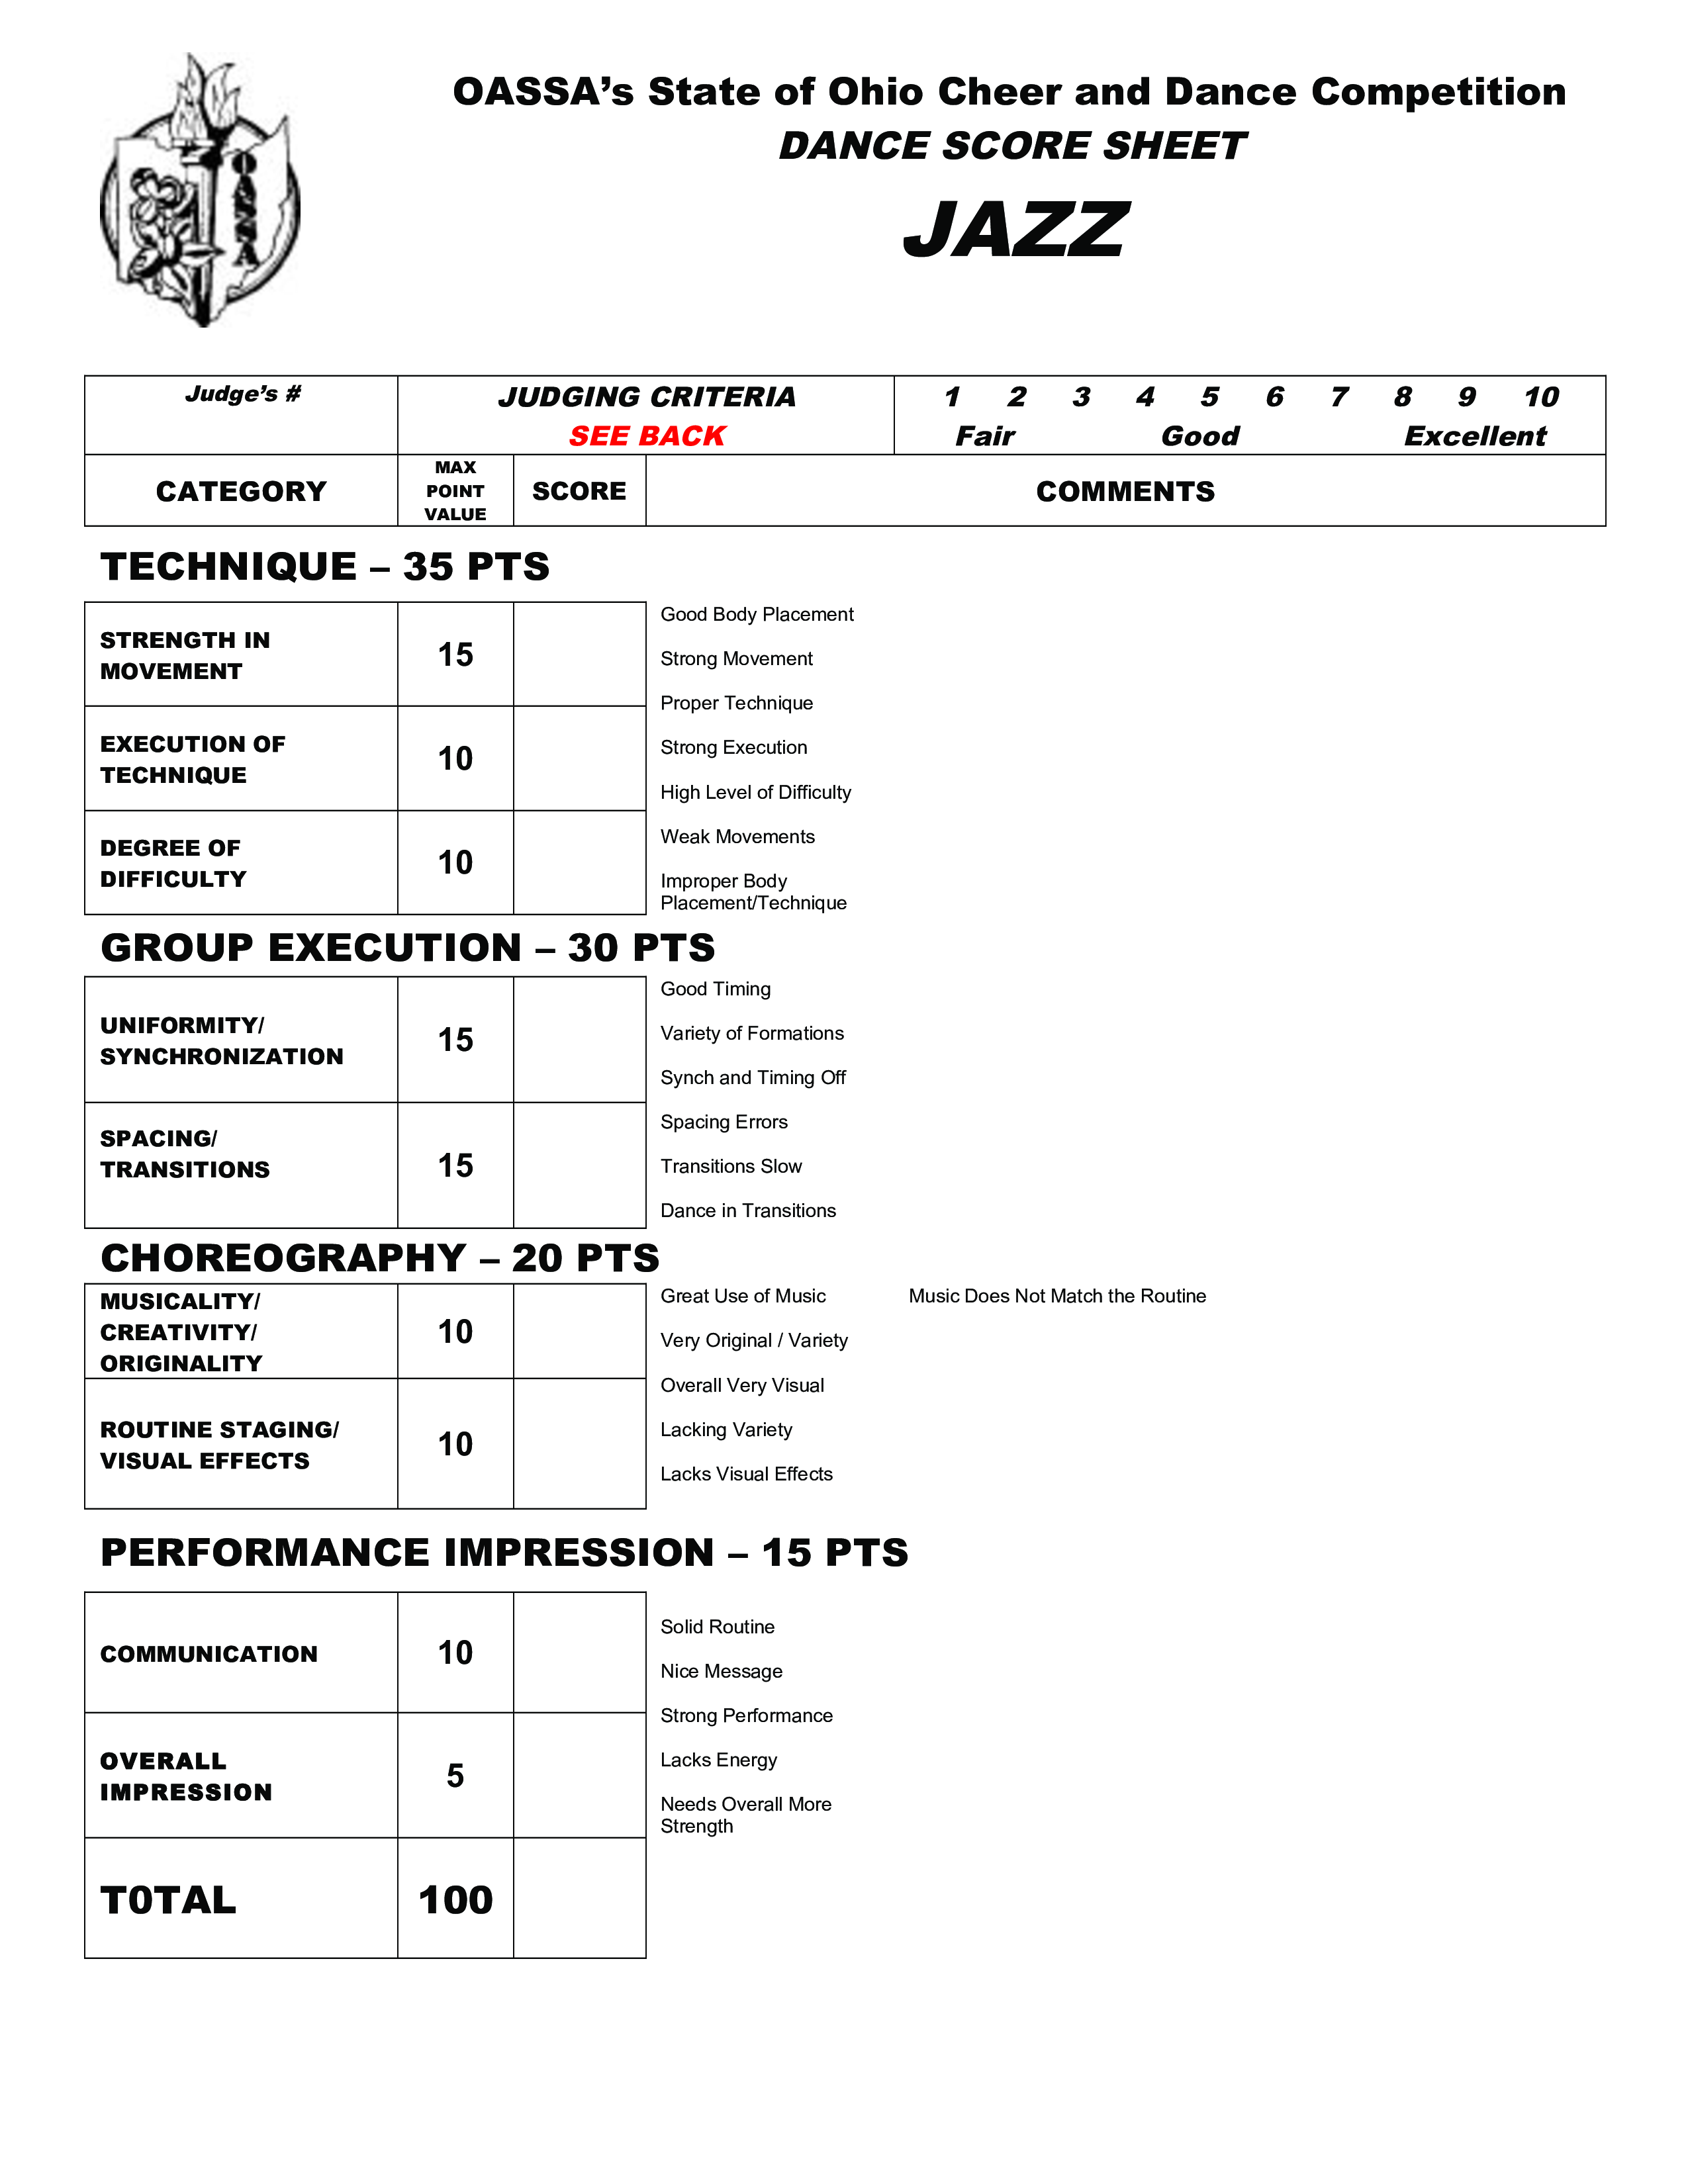 dance score sheet template